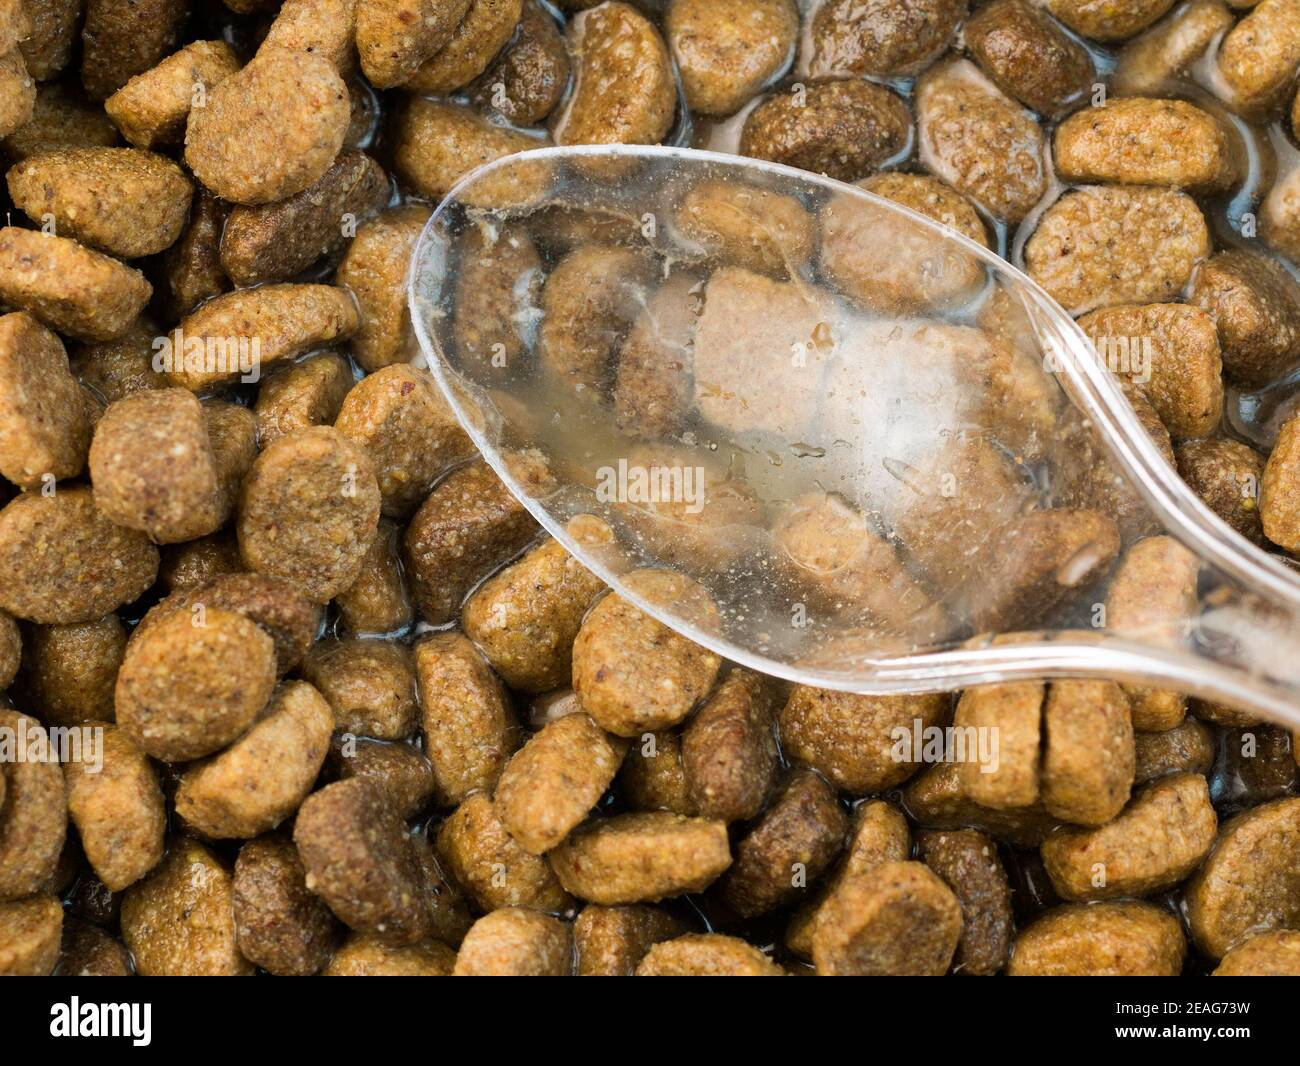 Vista dall'alto ravvicinata del cibo secco per cani con acqua e un cucchiaio sulla parte superiore. Foto Stock